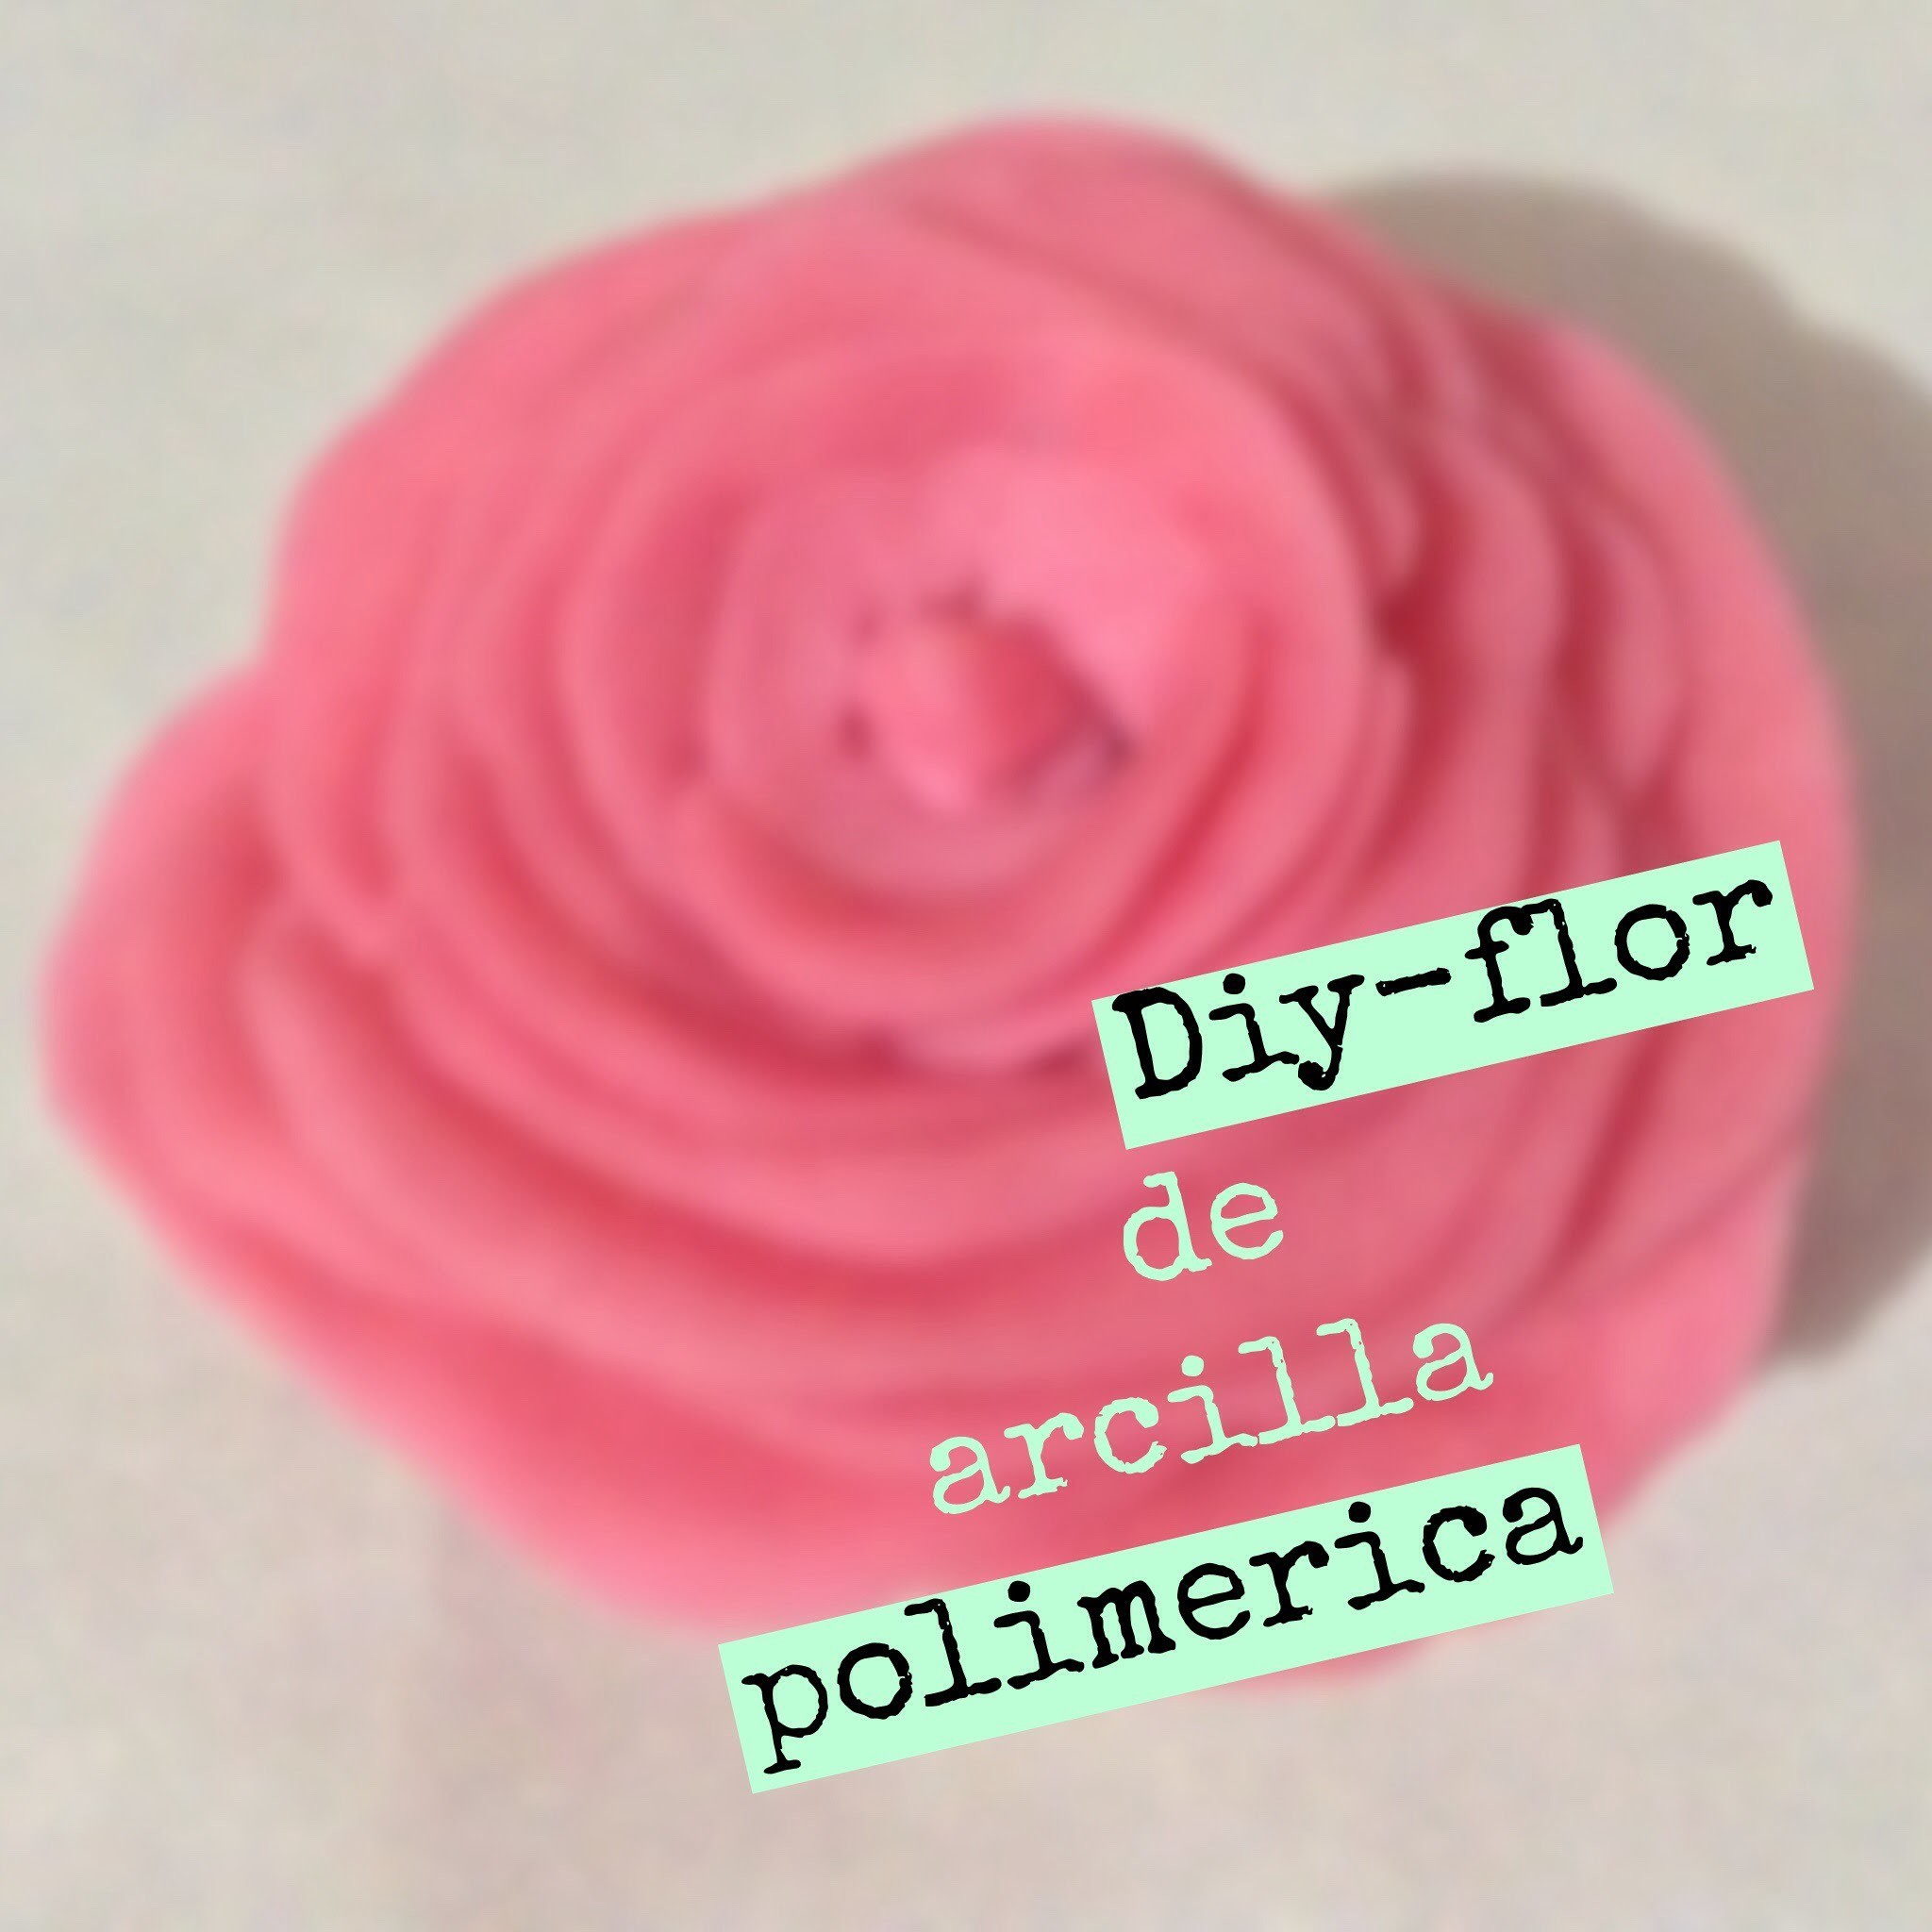 Diy-flor con arcilla polimerica. Polymer Clay flower.❤️